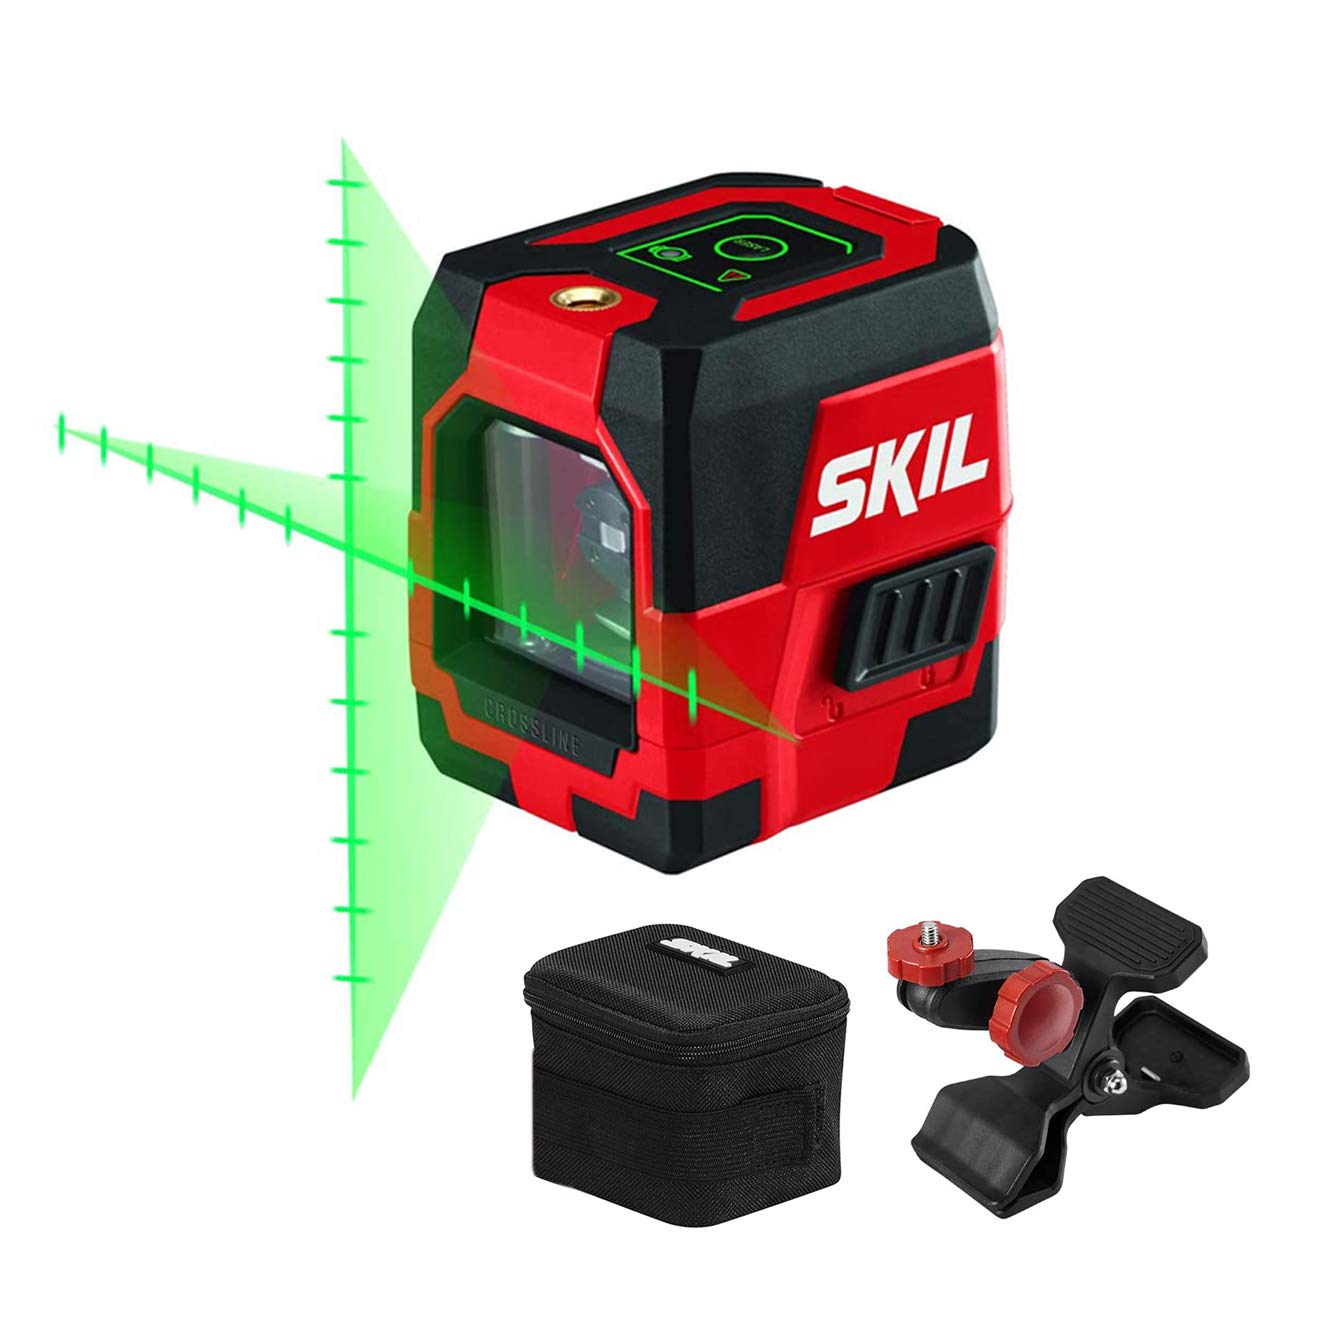 Skil Laser en croix vert à nivellement automatique avec repères de mesure projetés